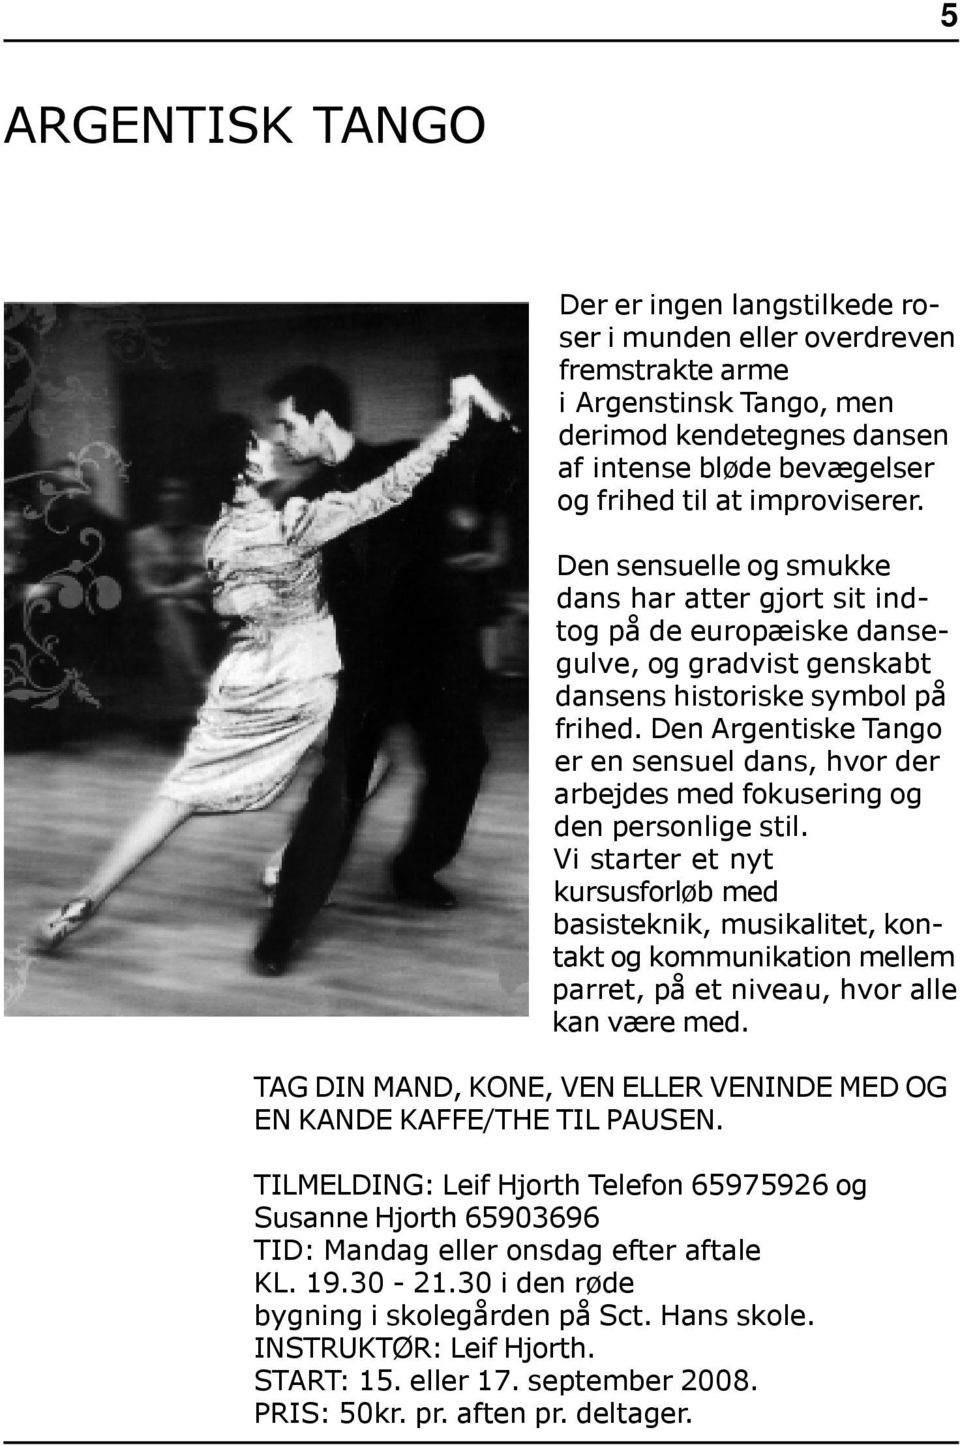 Den Argentiske Tango er en sensuel dans, hvor der arbejdes med fokusering og den personlige stil.